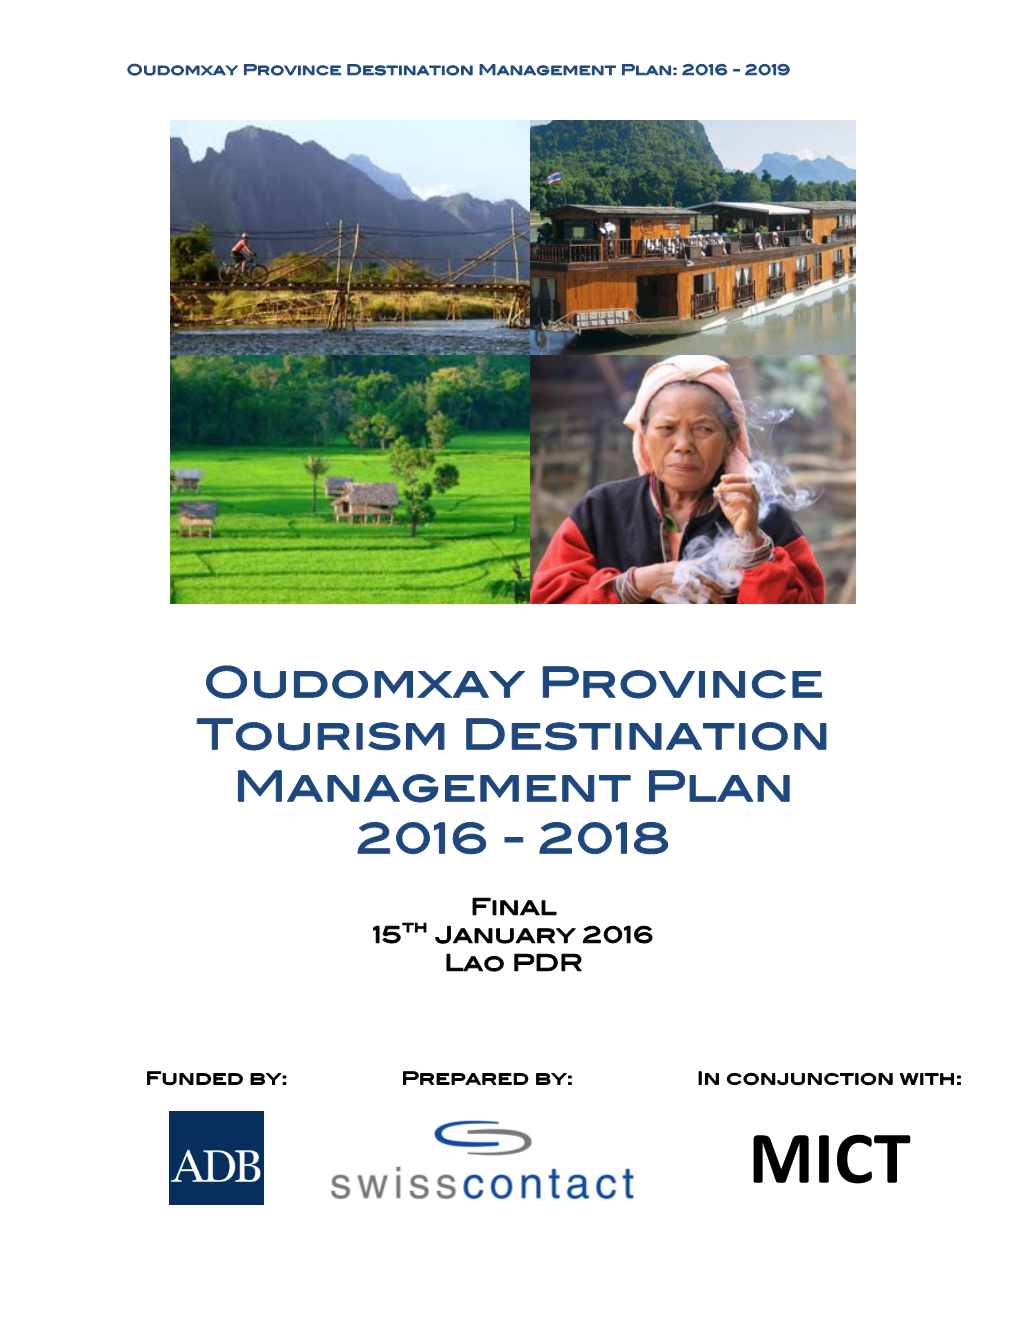 Oudomxay Province Tourism Destination Management Plan 2016 - 2018